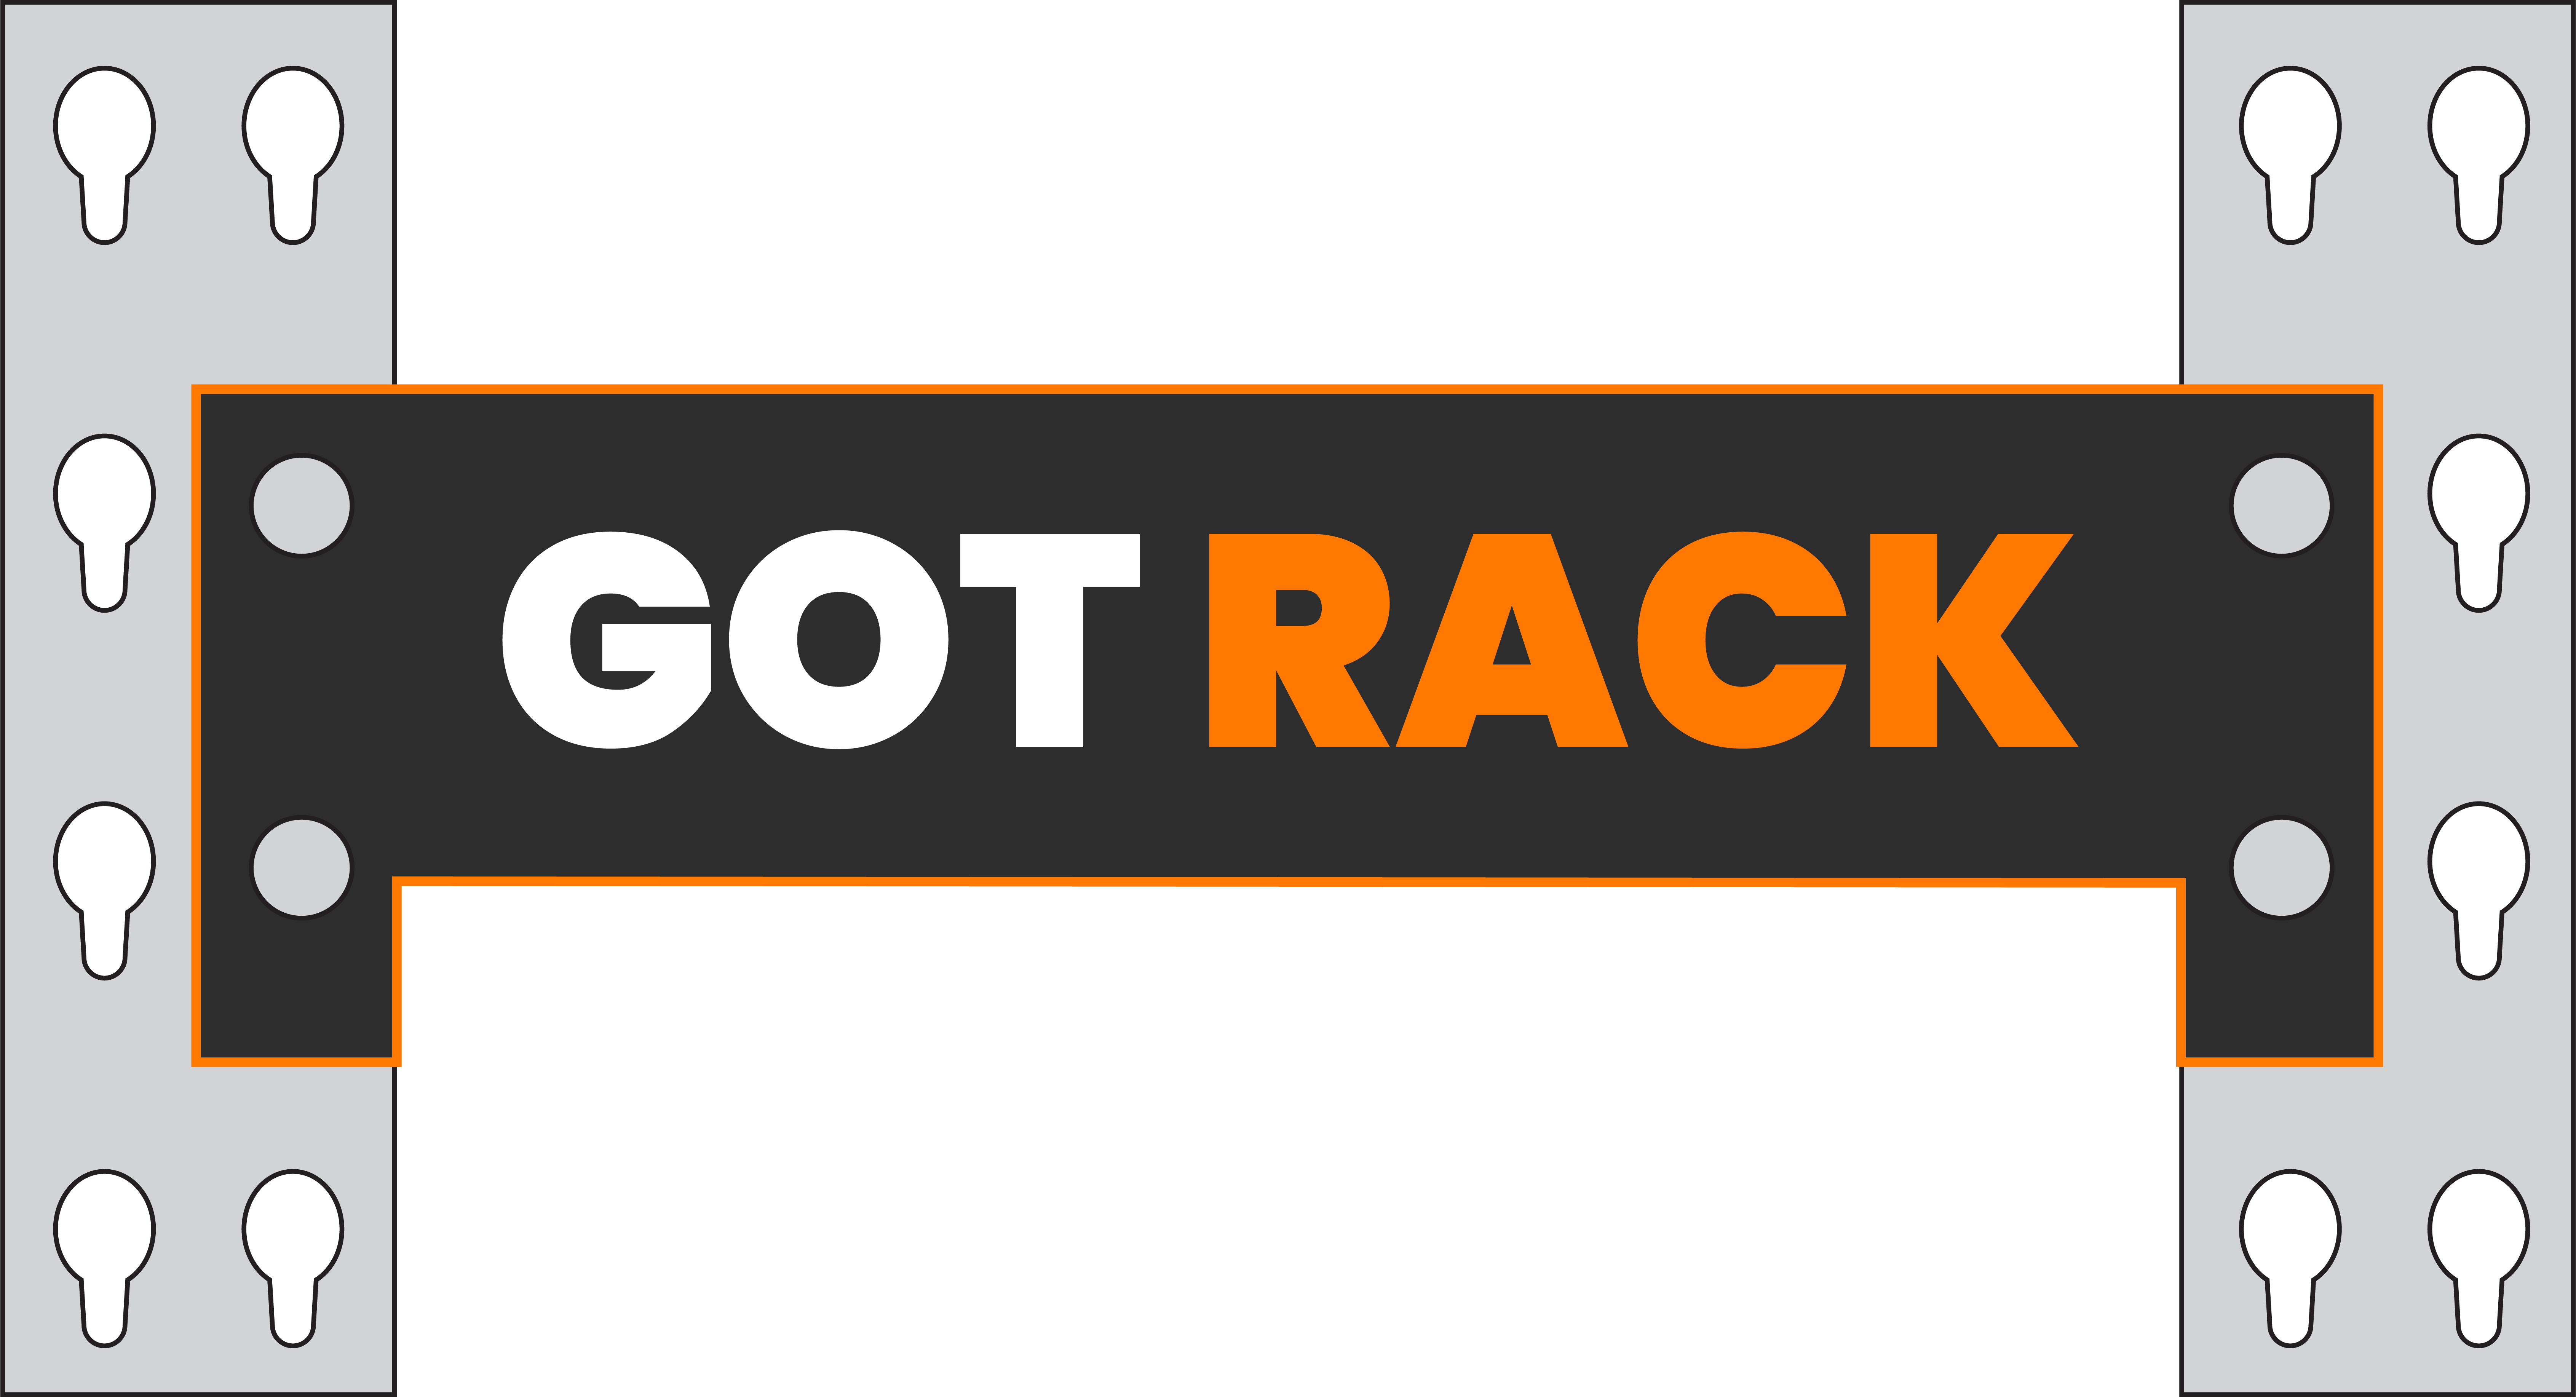 Got Rack